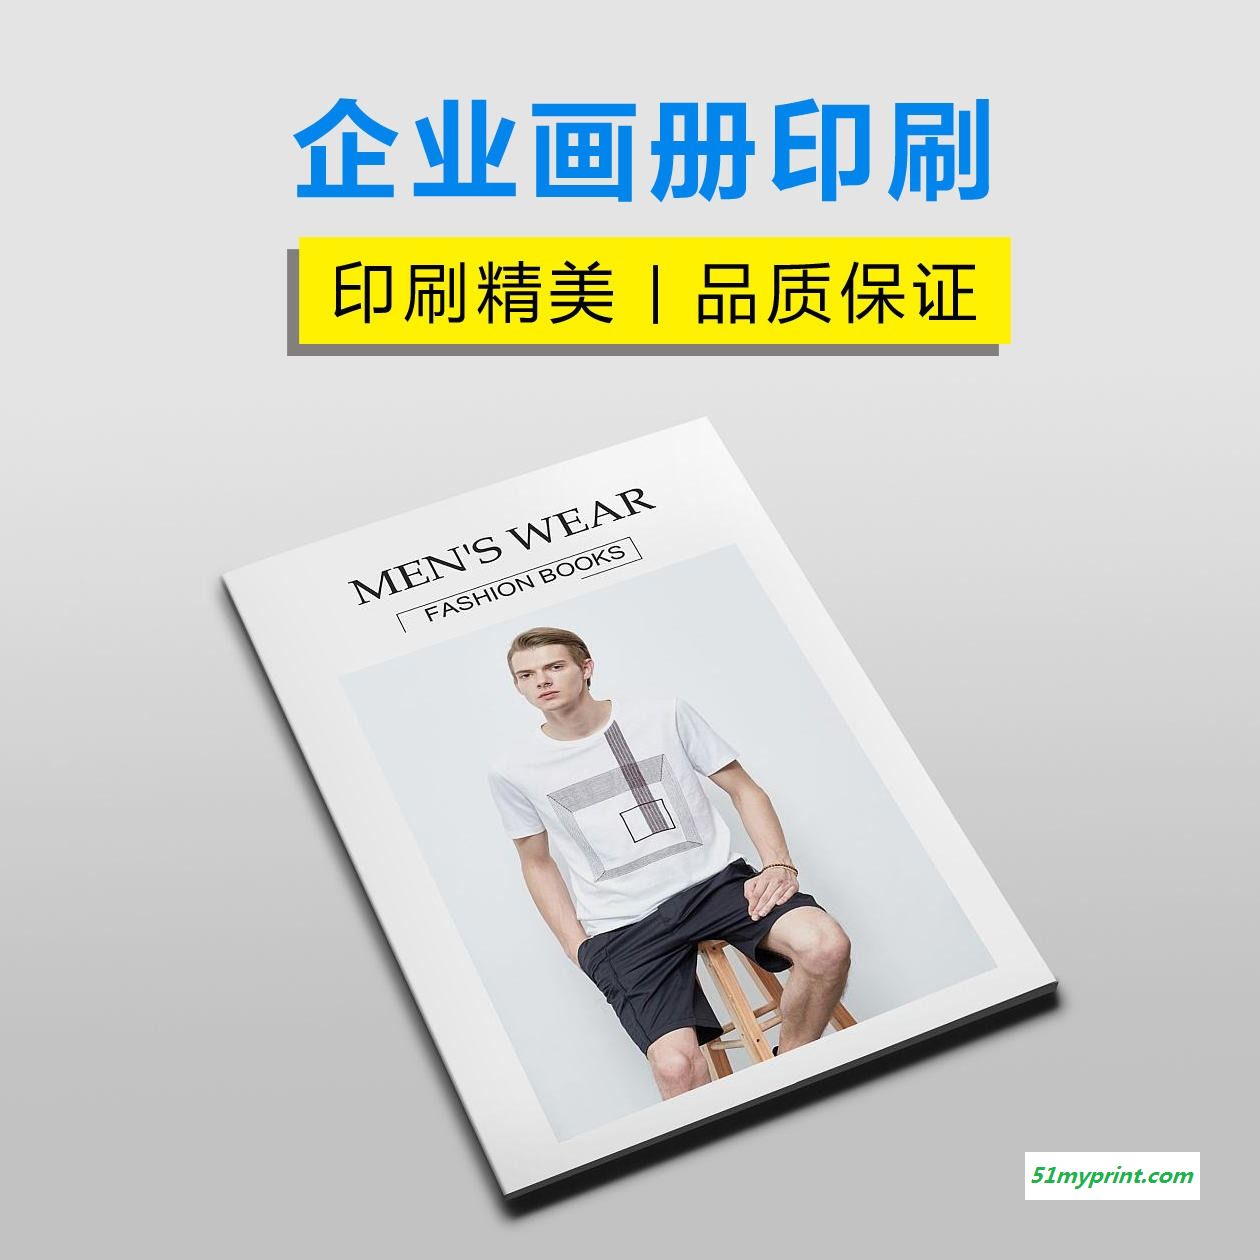 上海三煜印刷厂家定做 服装画册印刷定制 A4型号 儿童服装广告图册印刷